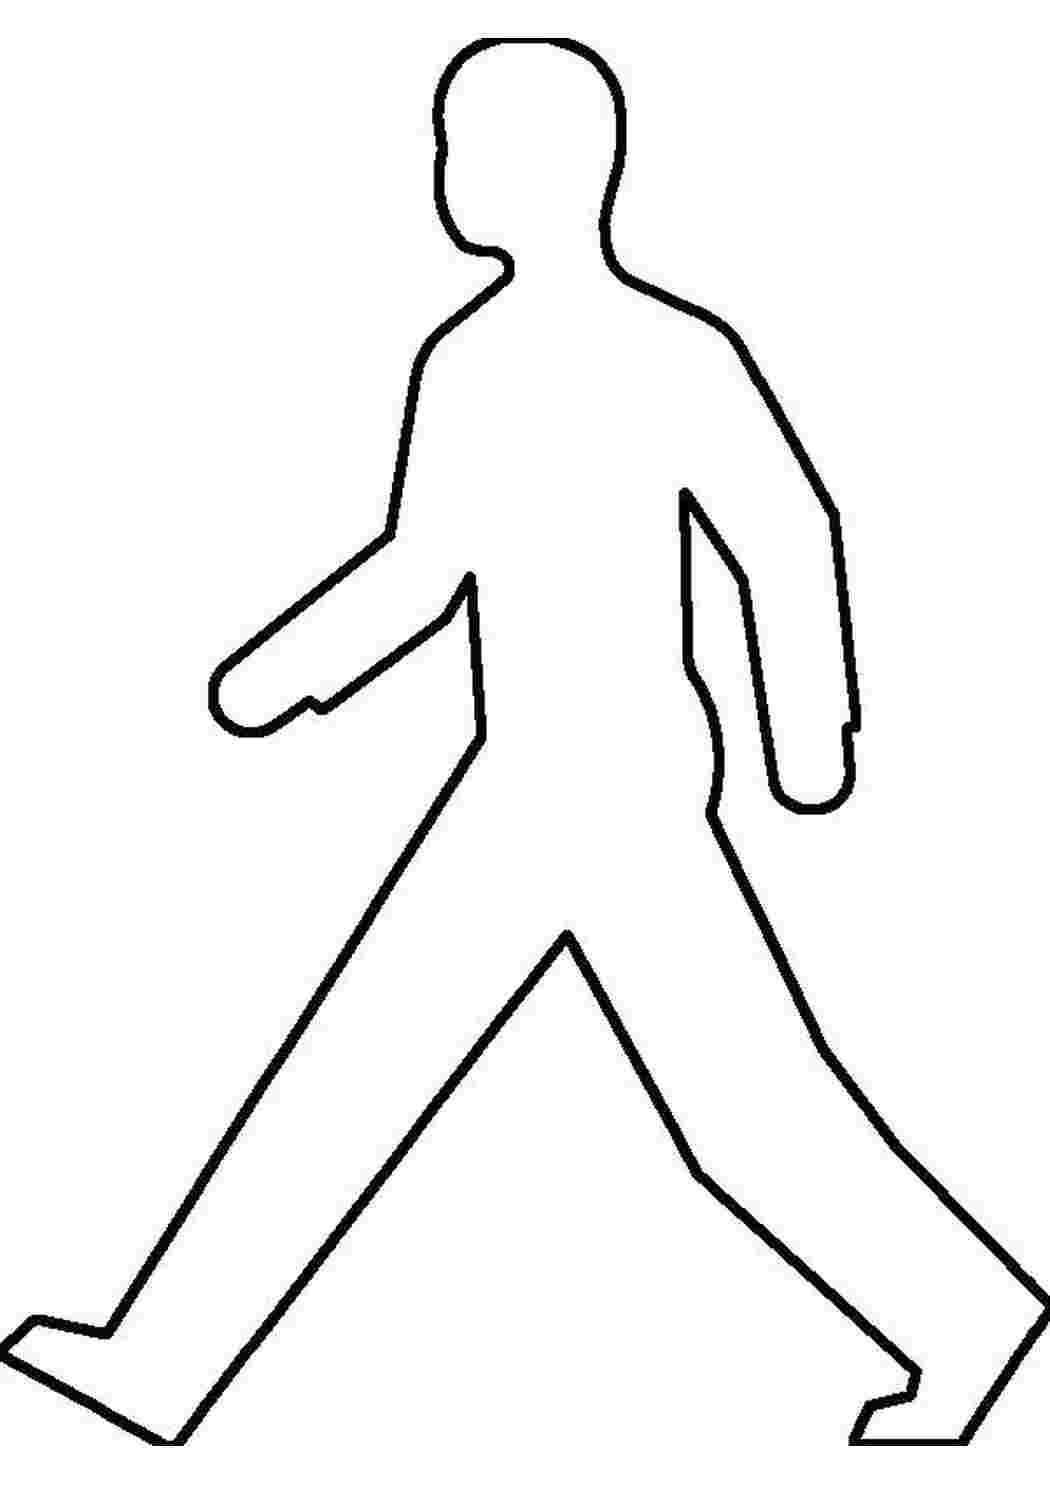 Раскраски Раскраски шаблон человека шаблон идущего человека для вырезания из бумаги Шаблон Шаблон